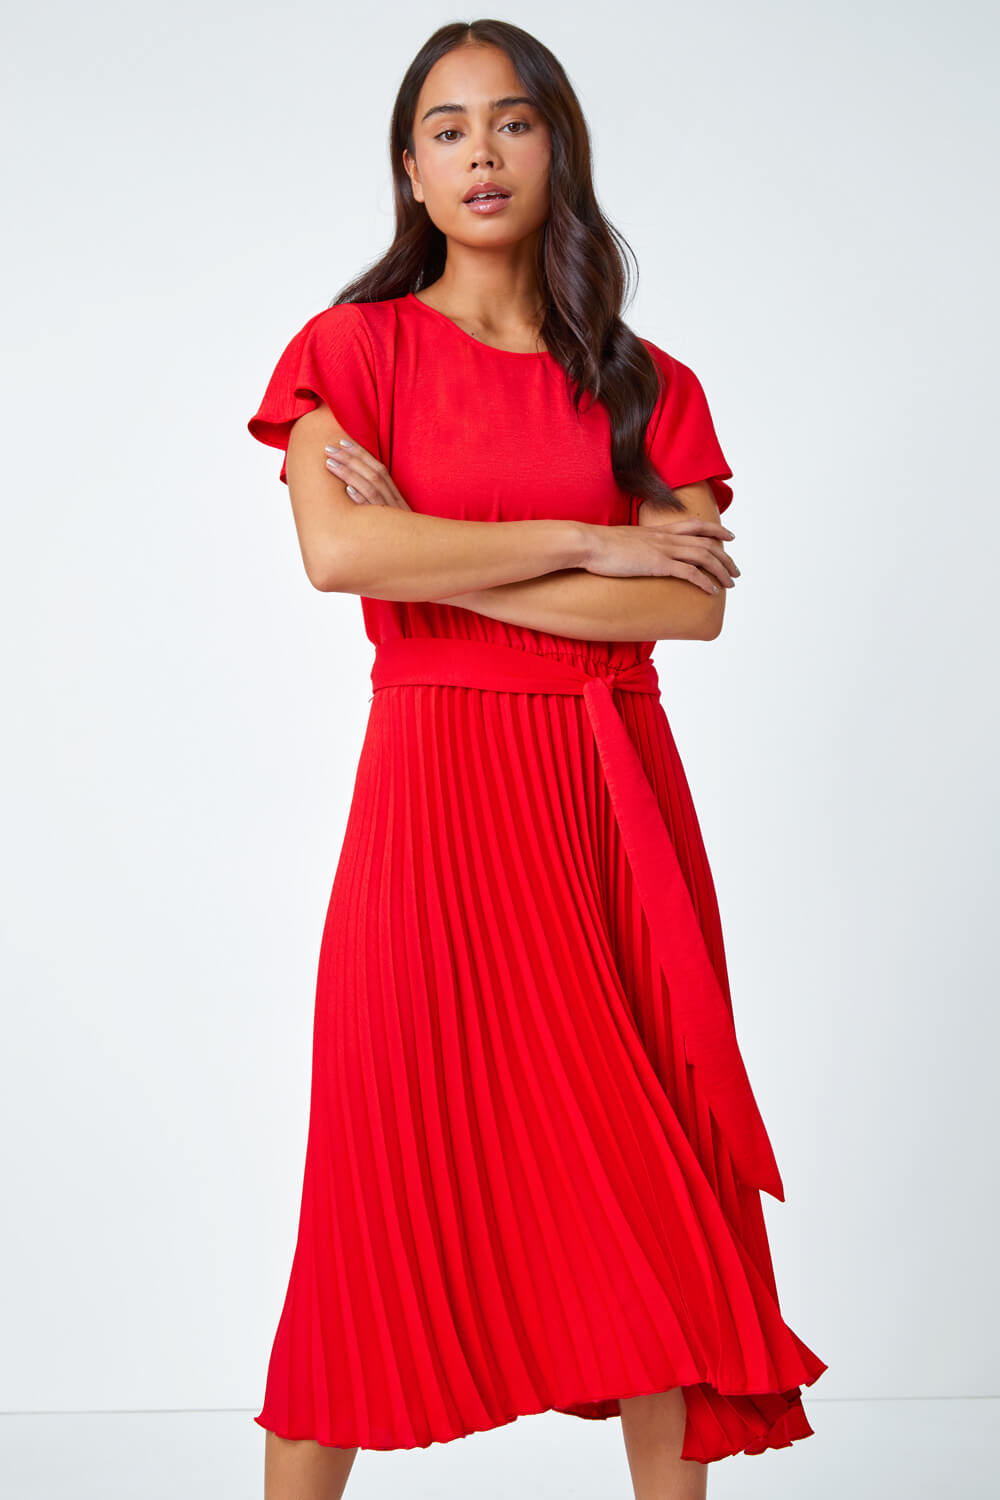 Red Petite Plain Pleated Skirt Midi Dress, Image 2 of 5